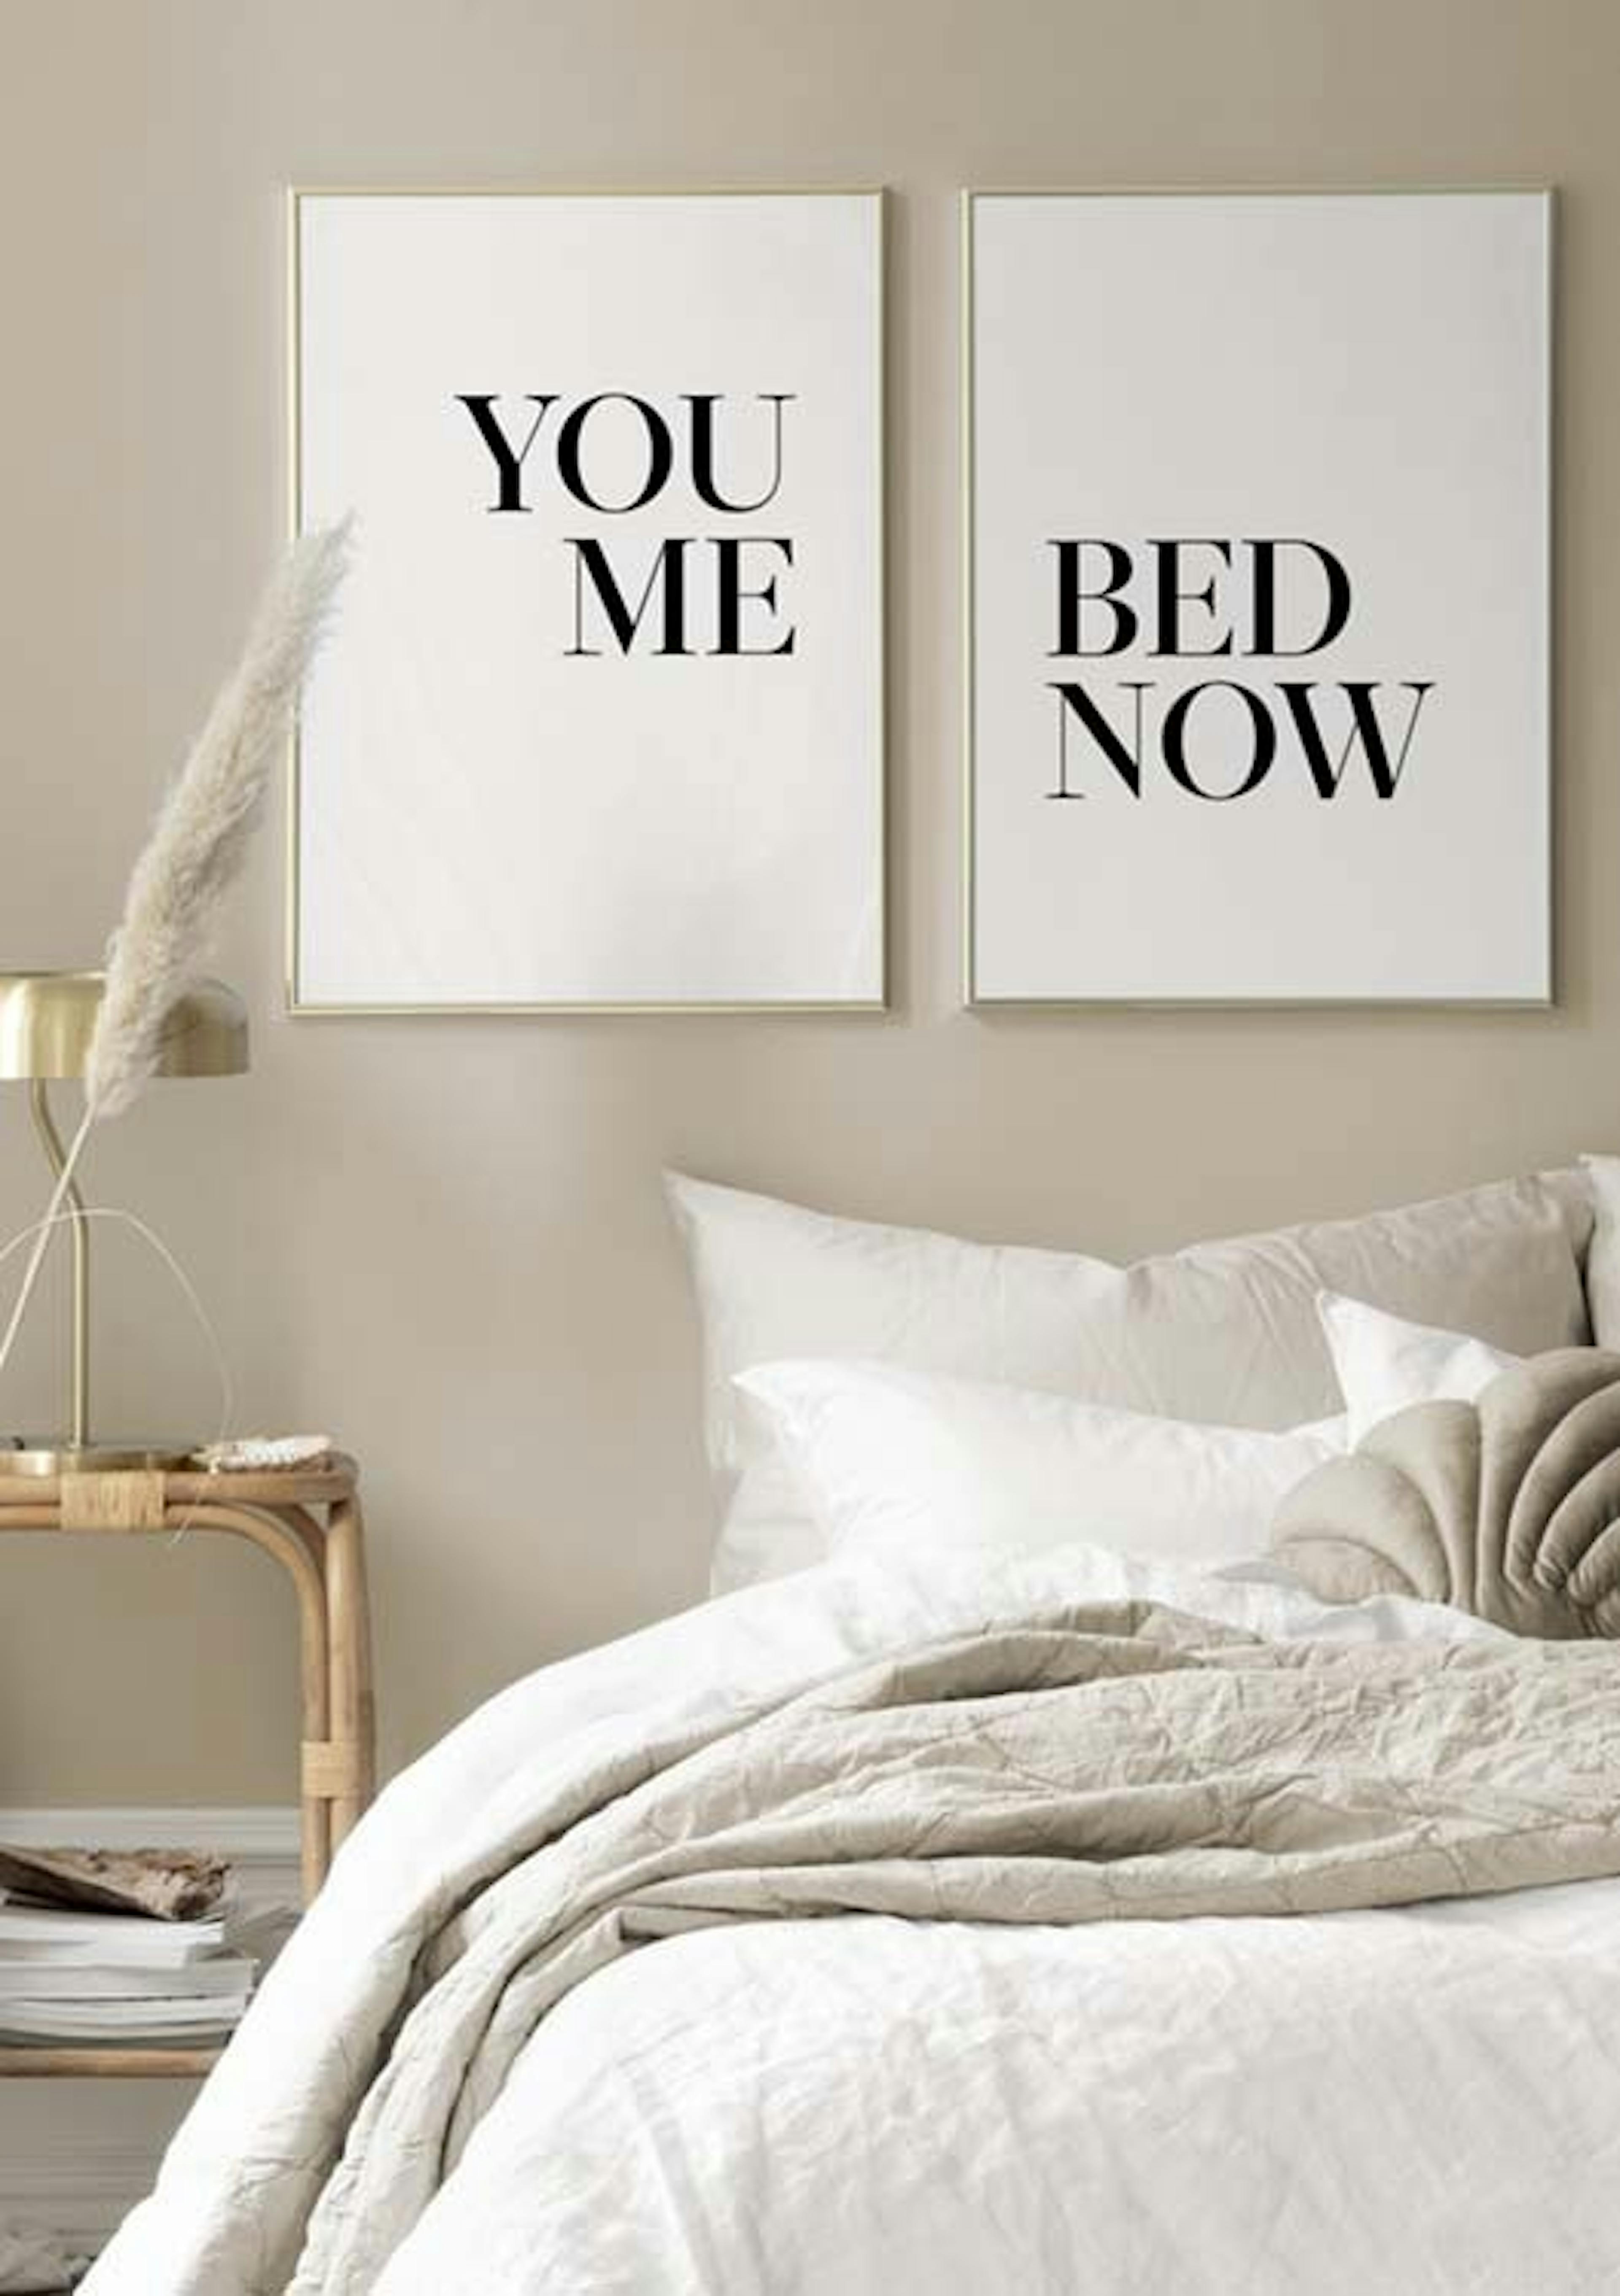 Camera di letto in coppia pacchetto di poster thumbnail